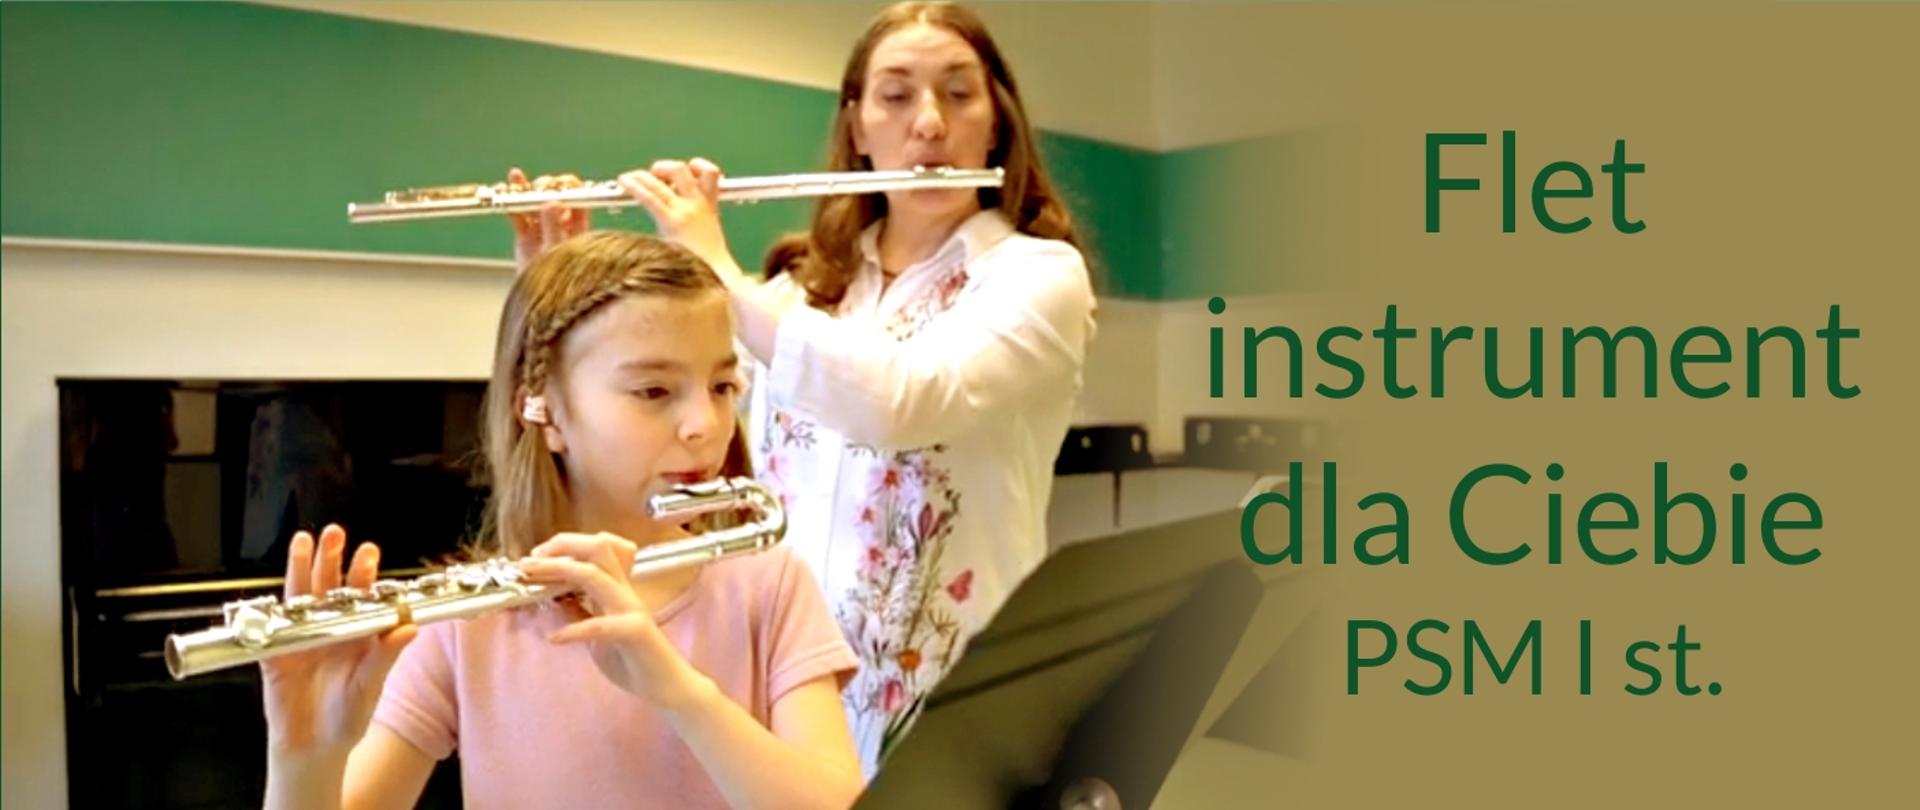 Grafika przedstawia uczennicę i nauczyciela grających na flecie oraz prezentuje napis: flet instrument dla Ciebie - PSM I st.